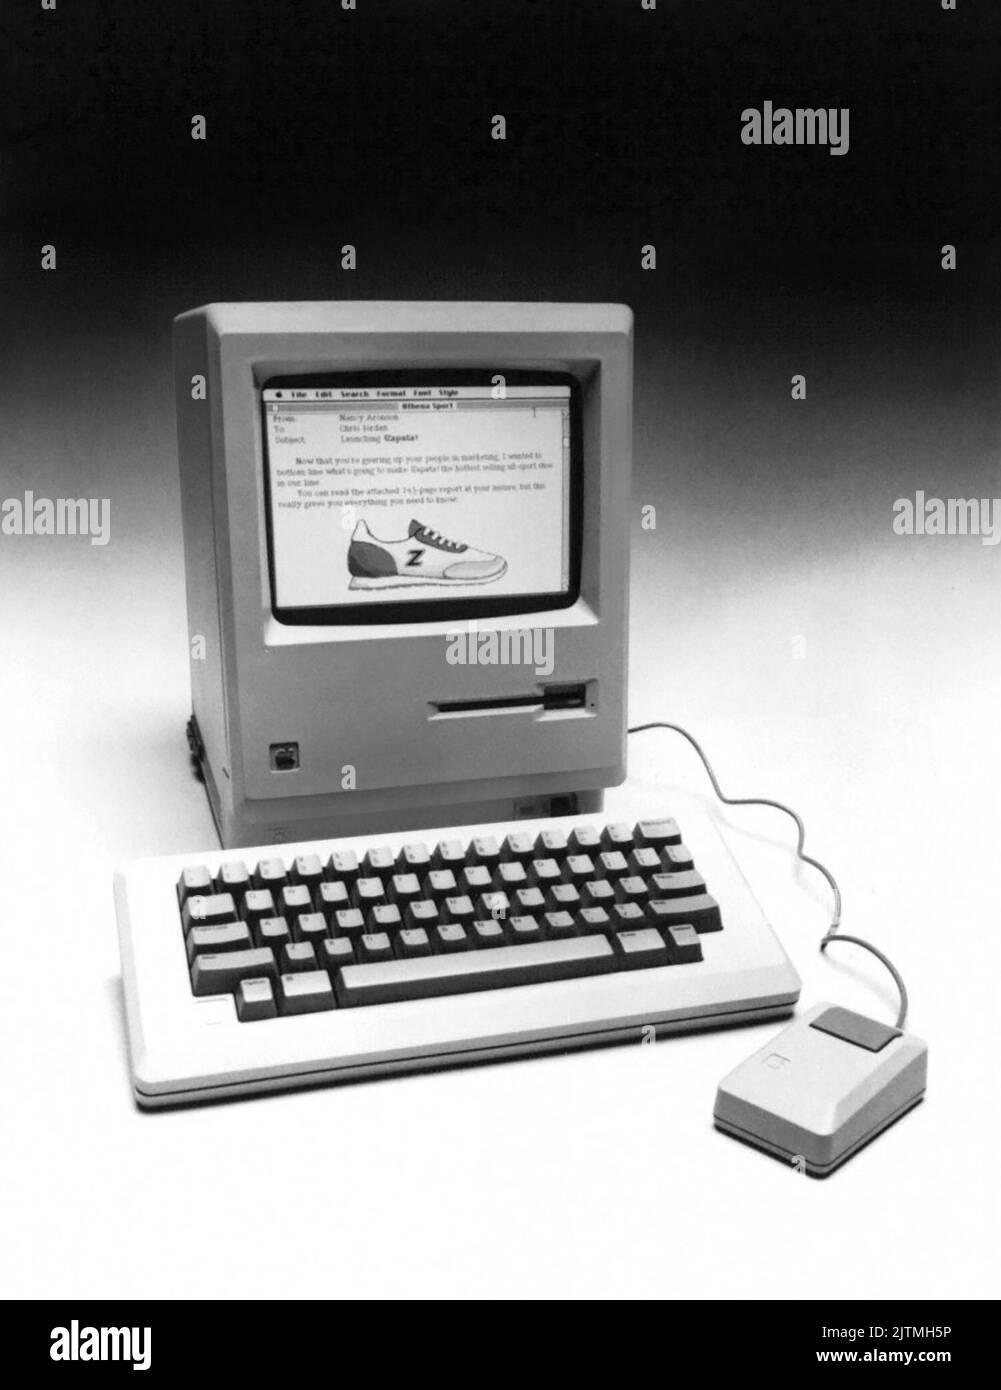 Foto pubblicitaria di Apple computer del gennaio 1984 del loro nuovissimo computer Macintosh. Apple ha annunciato che il nuovo Macintosh ha un microprocessore a 32 bit, un'unità disco integrata da 3,5 pollici, un display nero su bianco da 9 pollici, 64k di ROM e 128k di RAM, nonché una tastiera staccabile e un dispositivo di puntamento per mouse. Prezzo al dettaglio consigliato: $2.495. Foto Stock